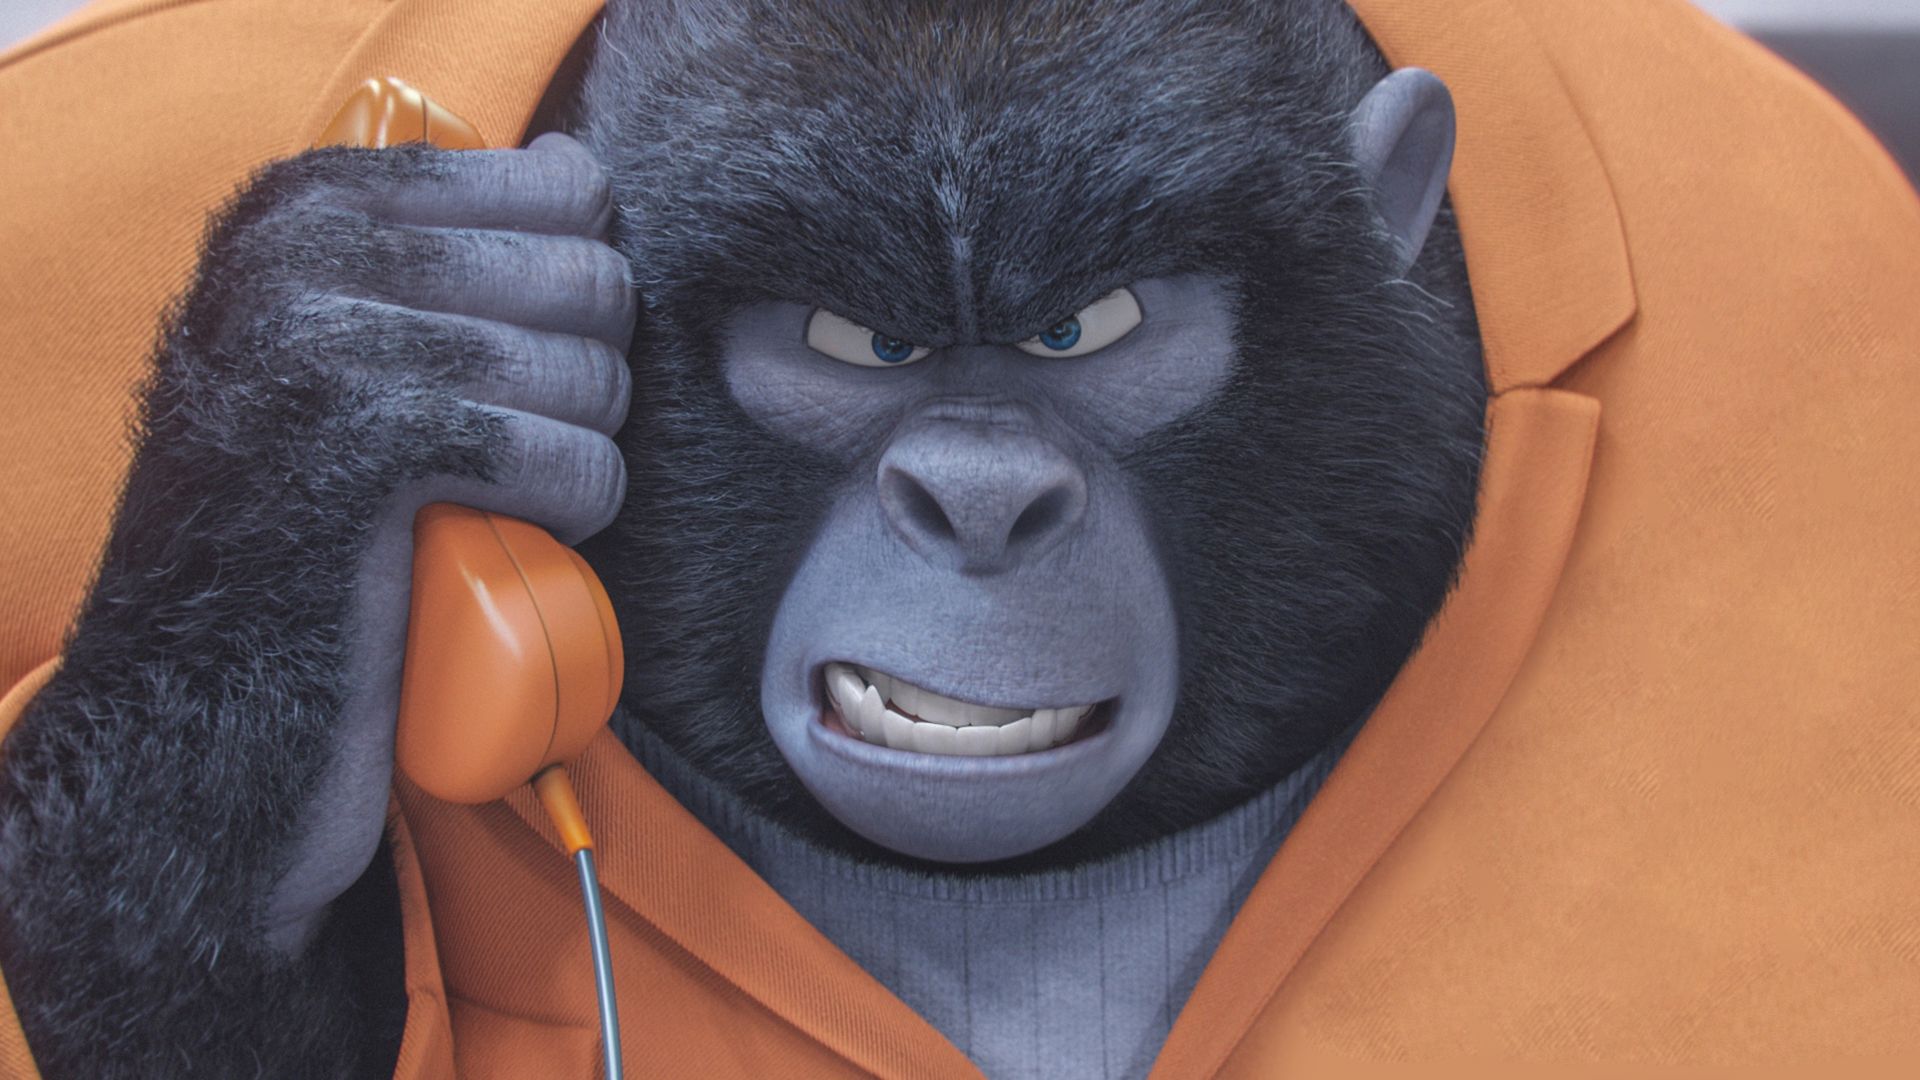 Путь к Славе, горилла, лучшие мультфильмы 2016, Sing, gorilla, best animation movies of 2016 (horizontal)